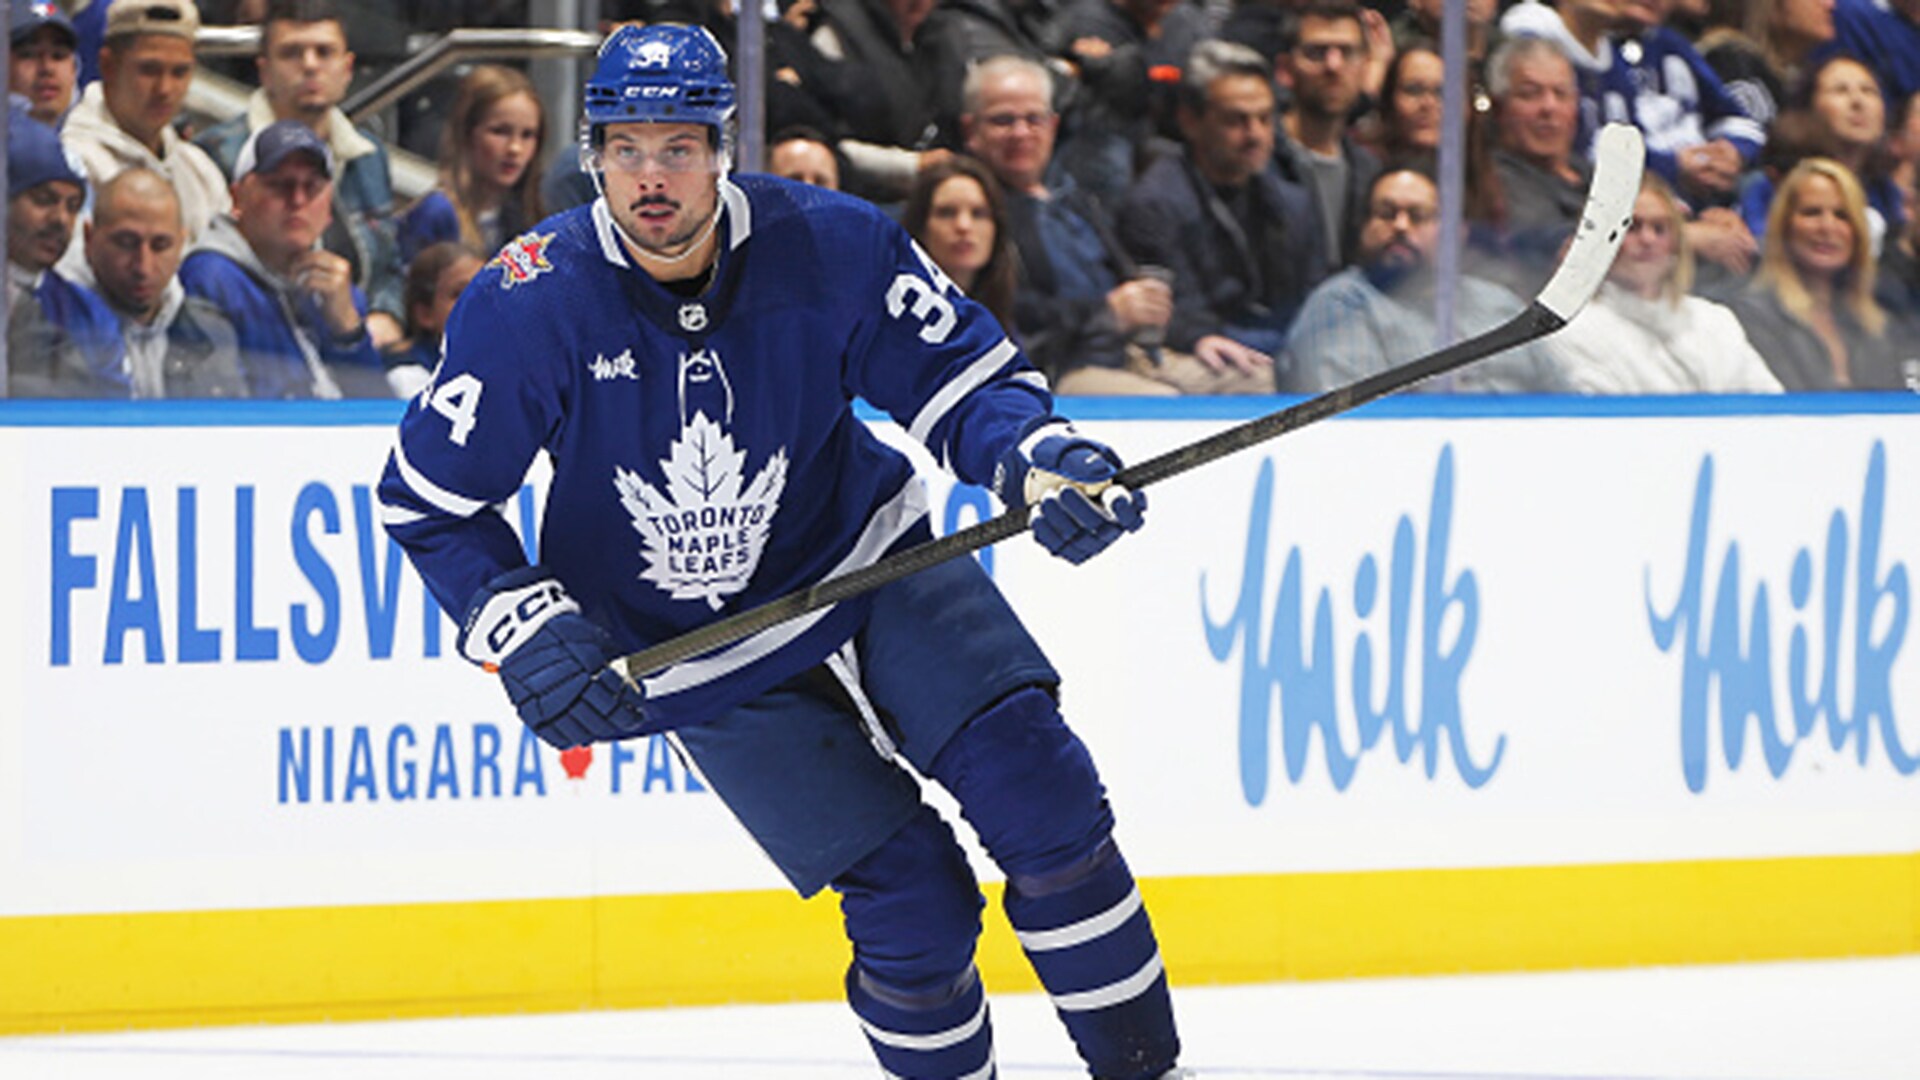 Matthews' hat trick helps Maple Leafs earn comeback win over Devils